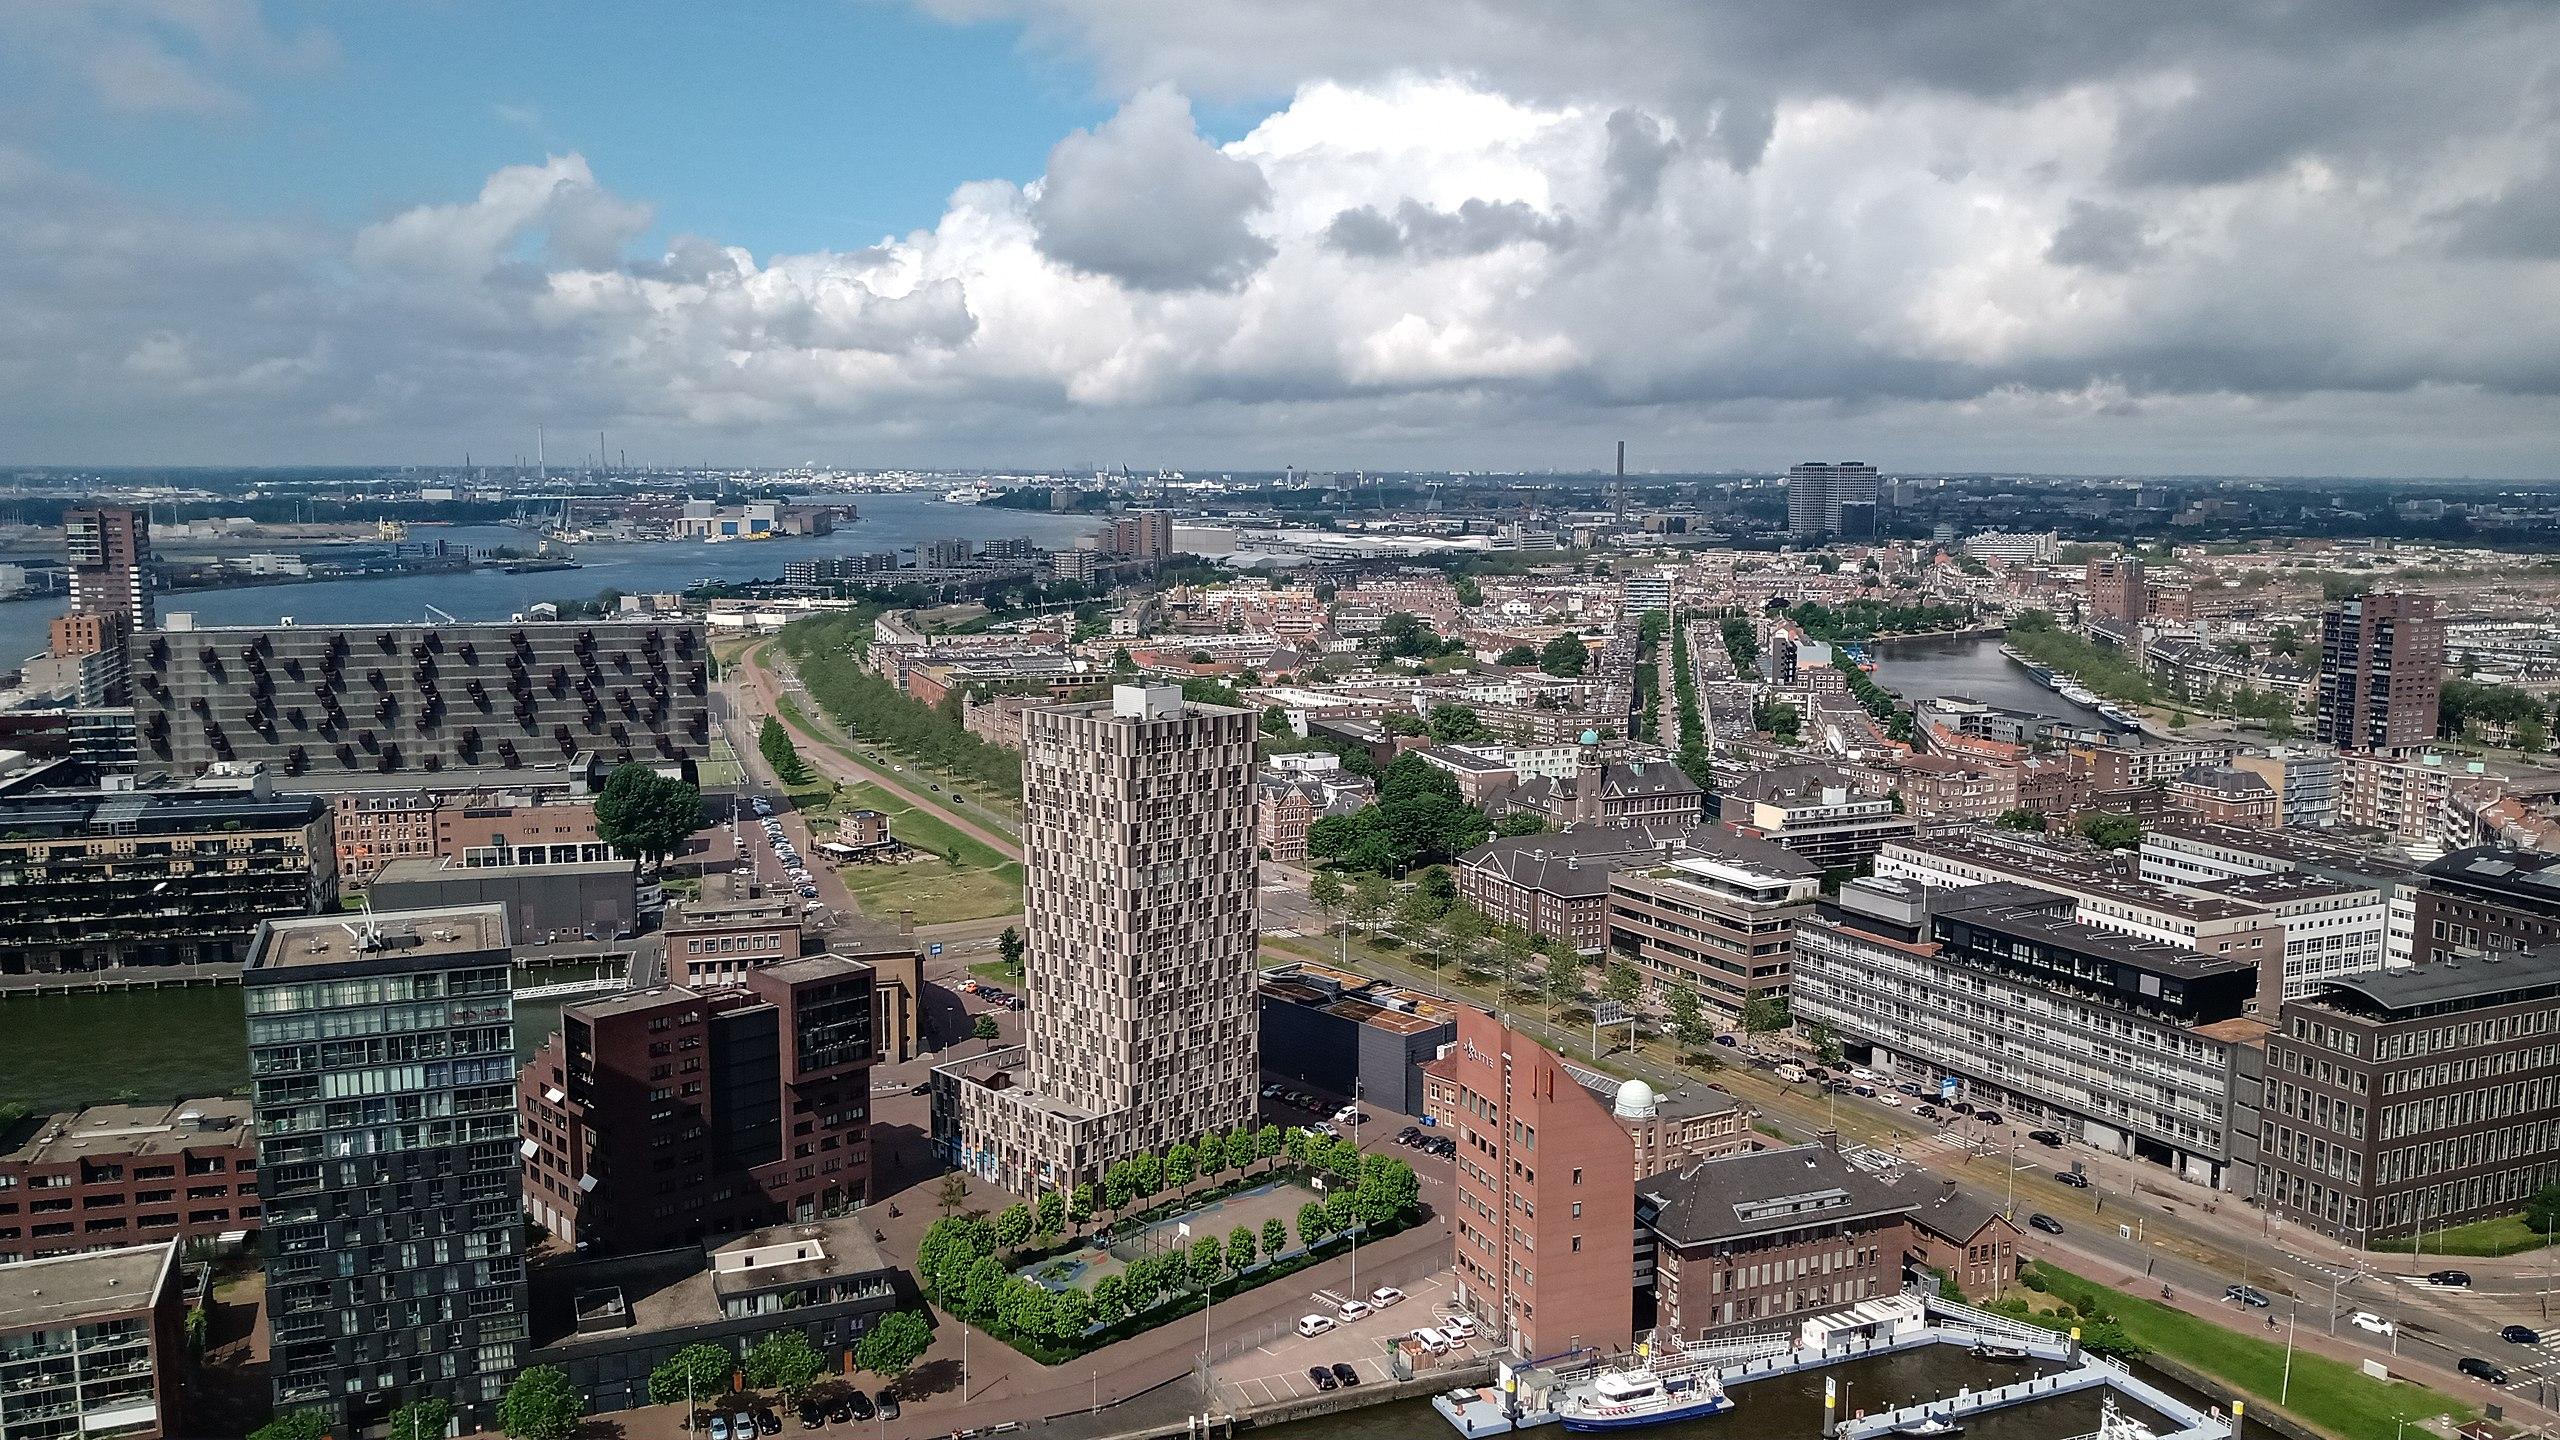 Θέα του Ροτερνταμ από τον πύργο Euromast